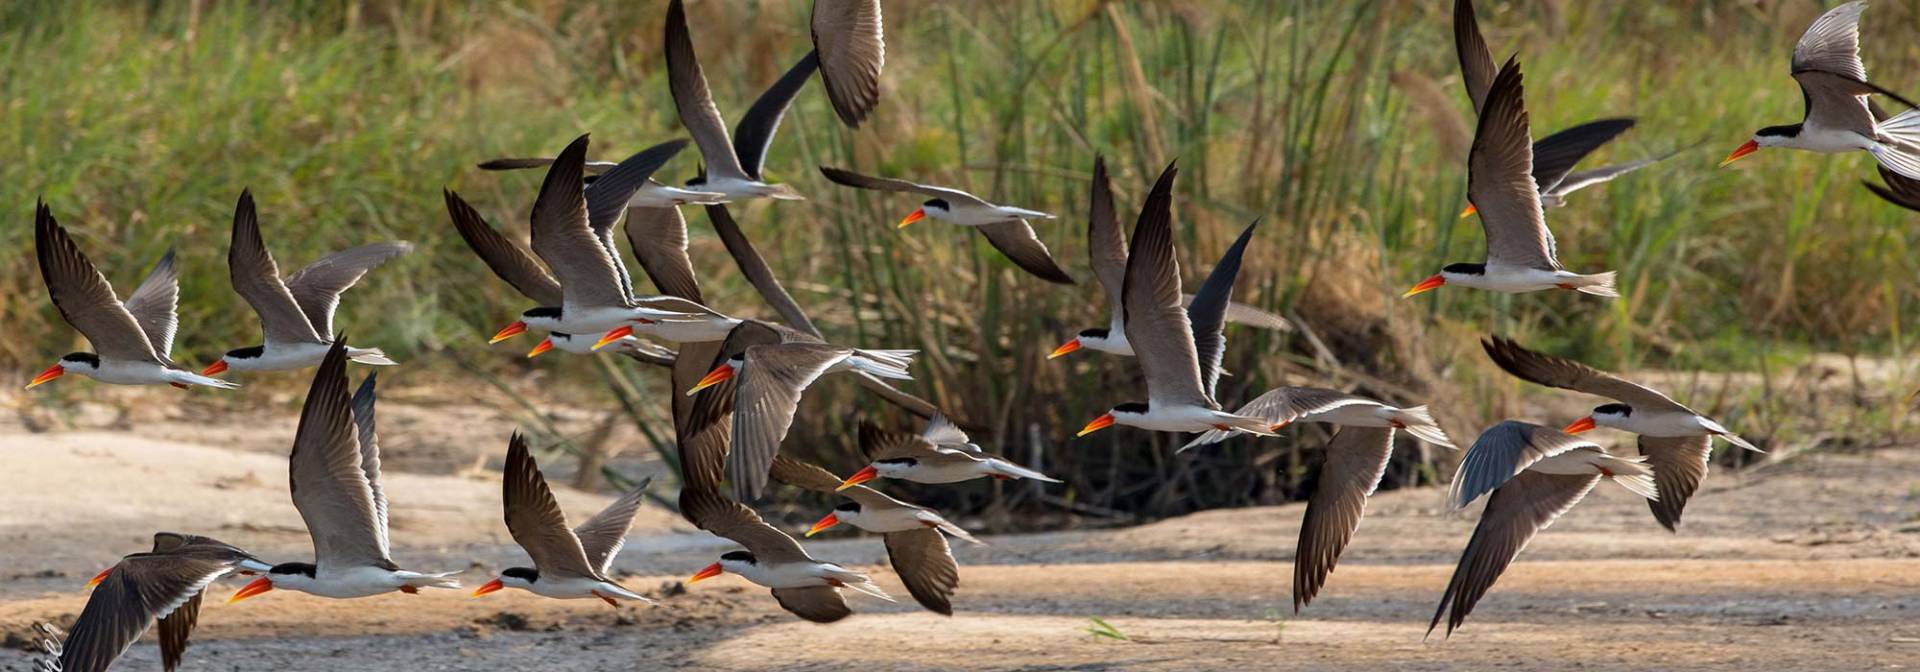 Okavango - Ein Vogelparadies in Afrika